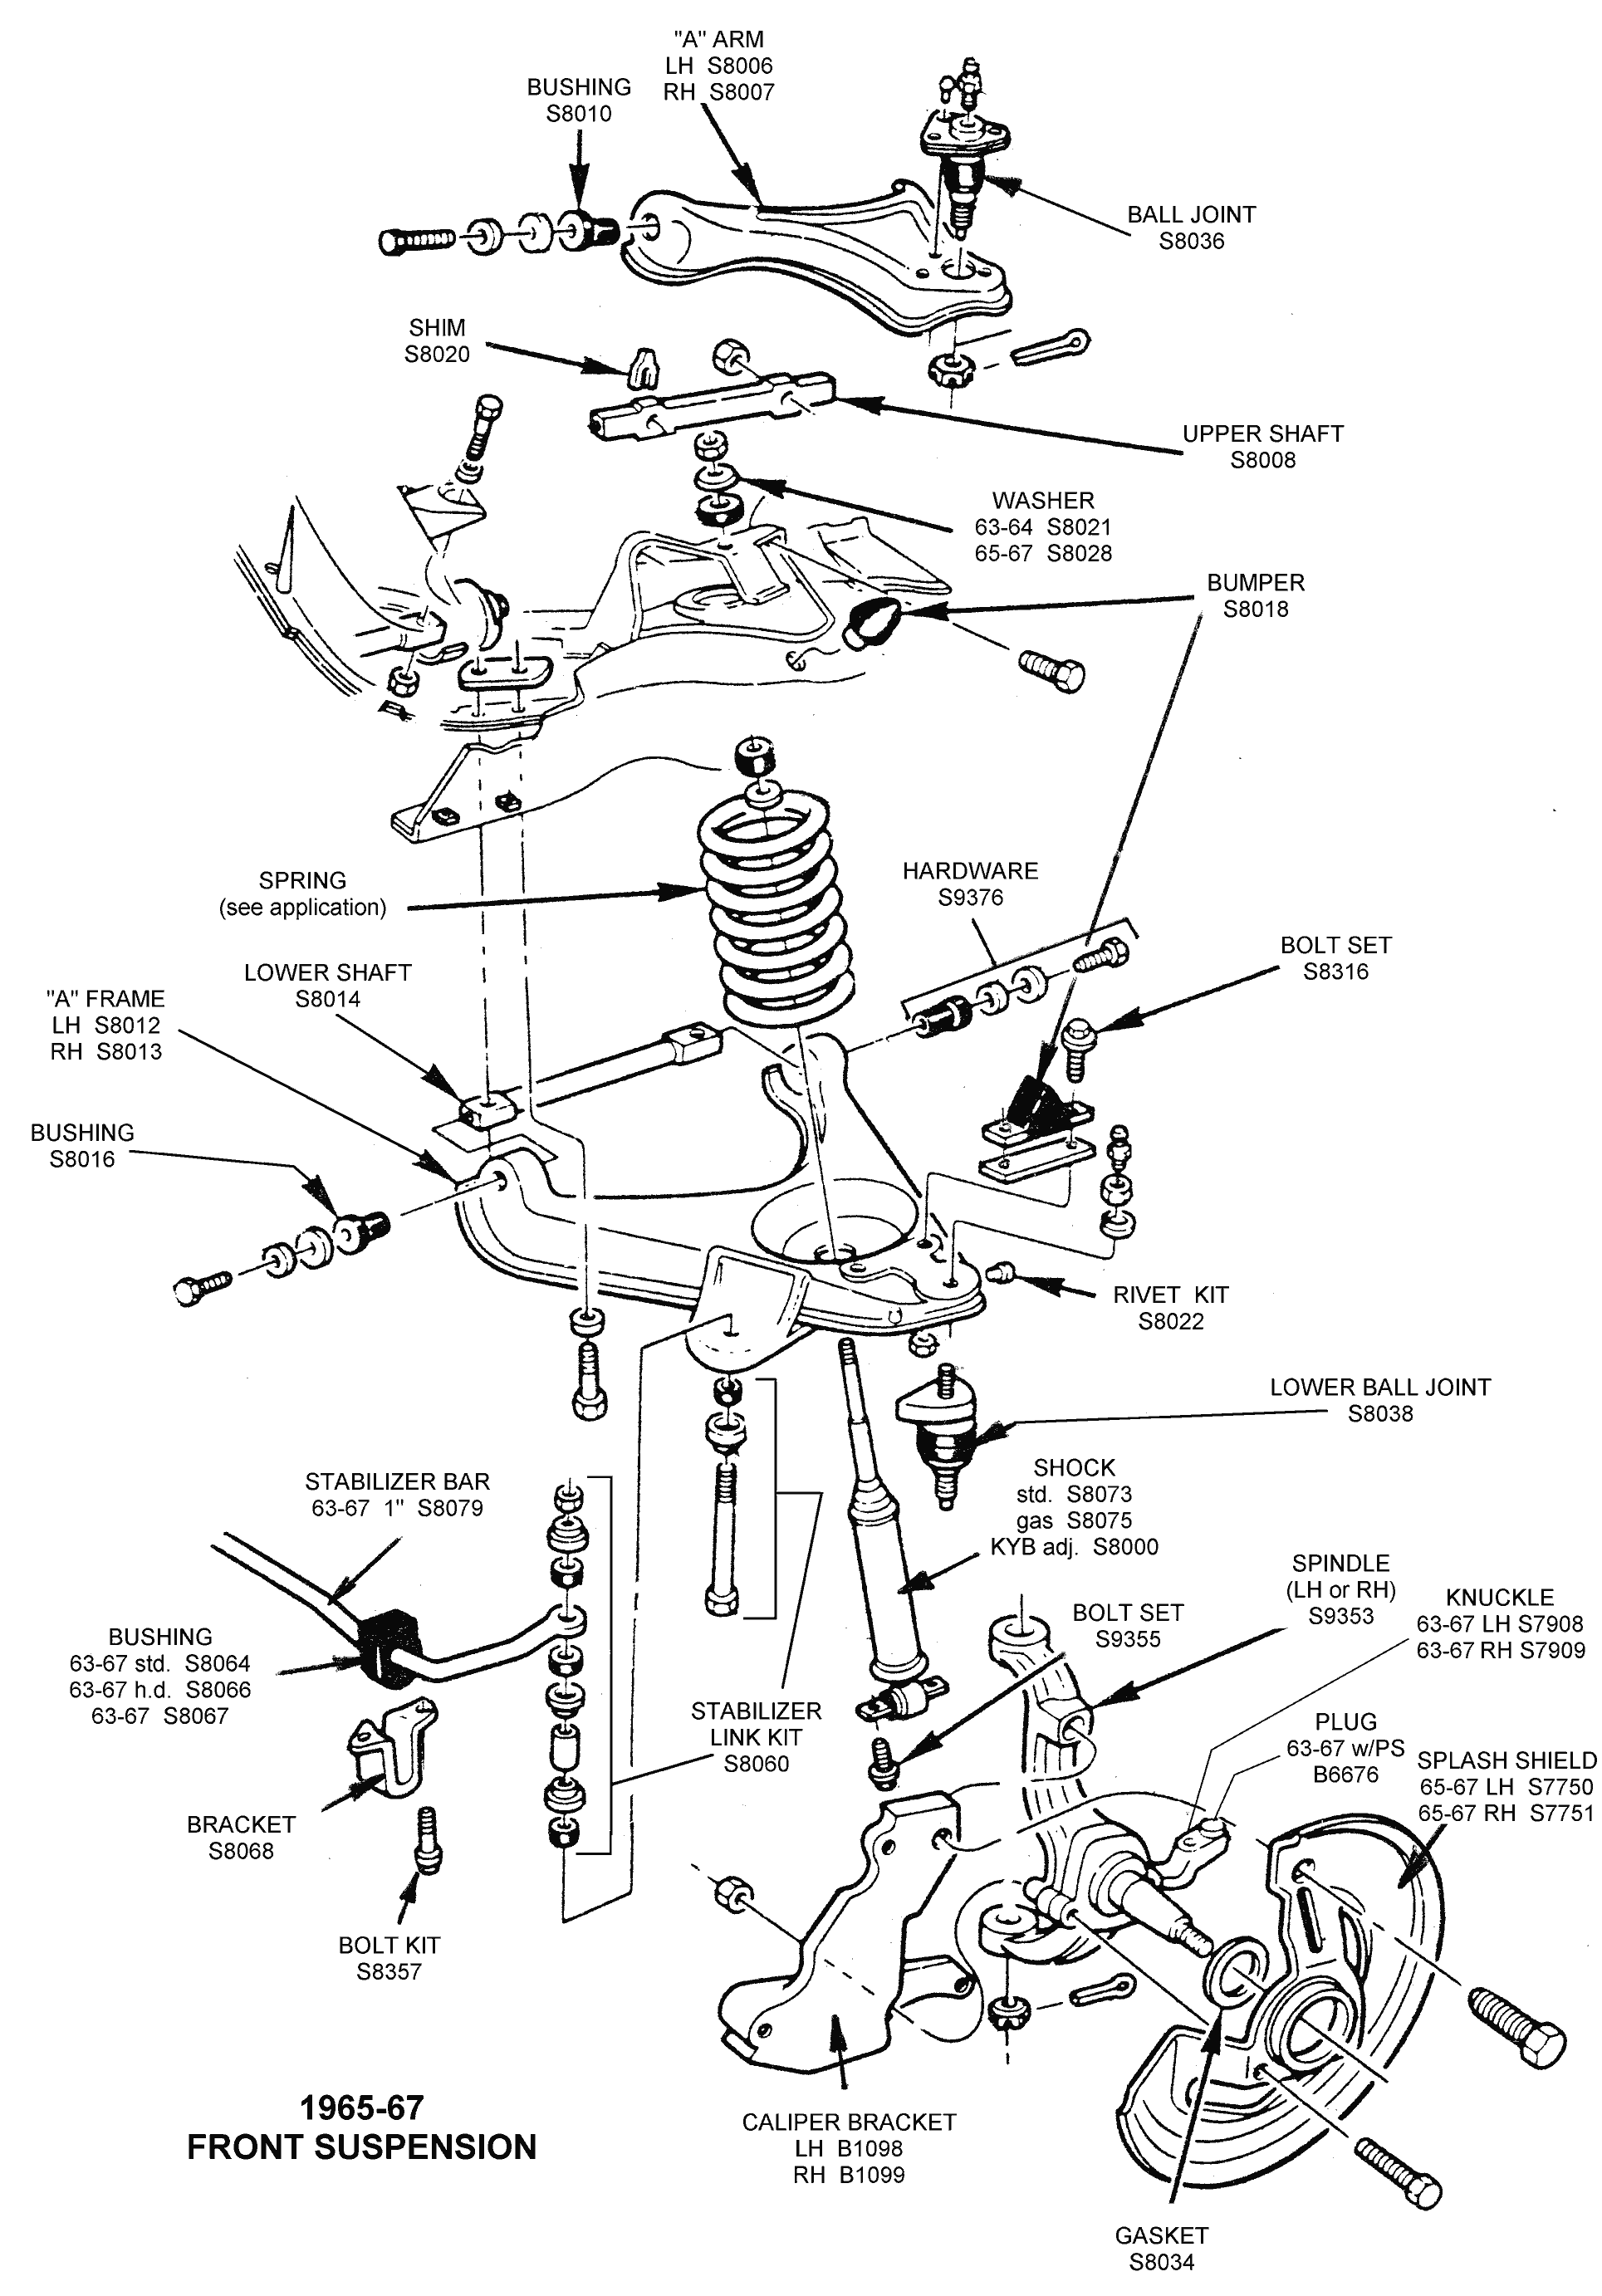 Front Suspension Diagram